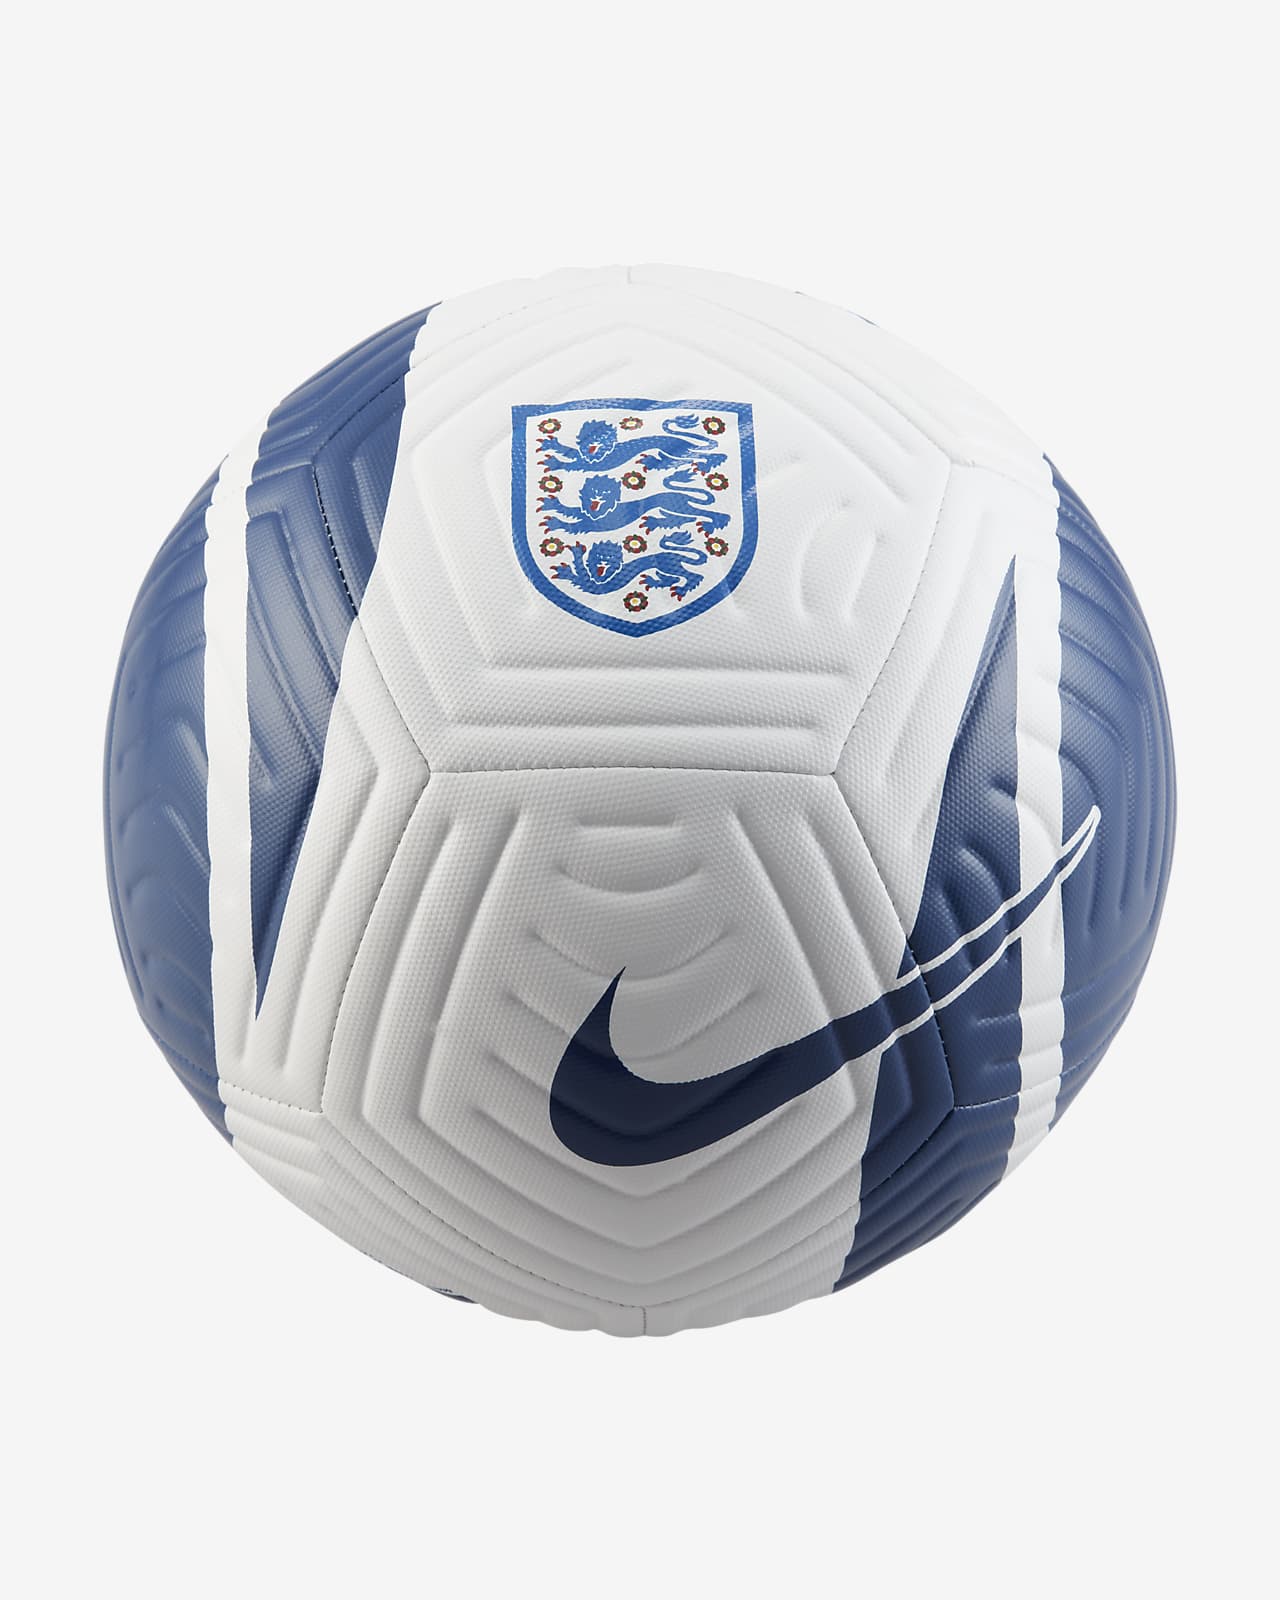 England Academy fotball